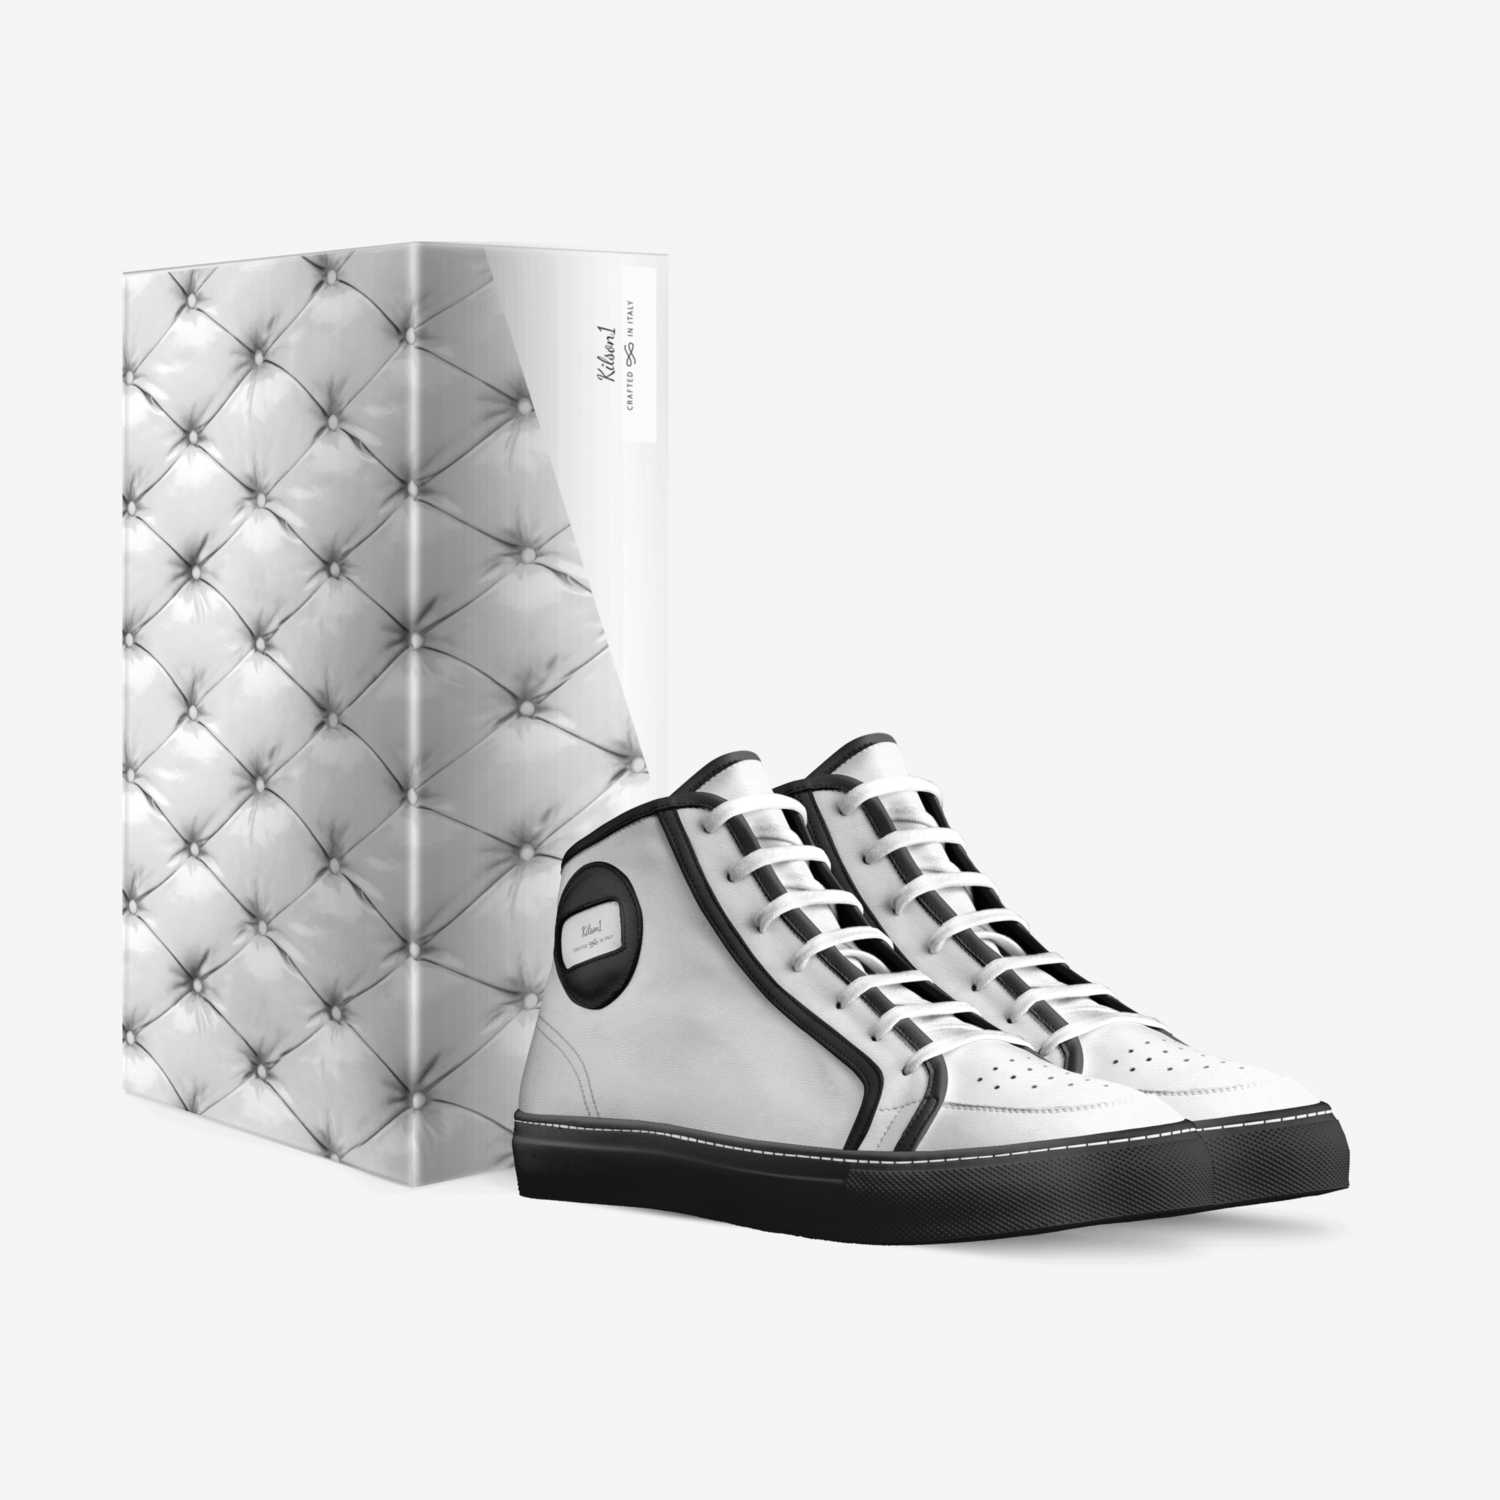 Kilson1 custom made in Italy shoes by Kilson | Box view